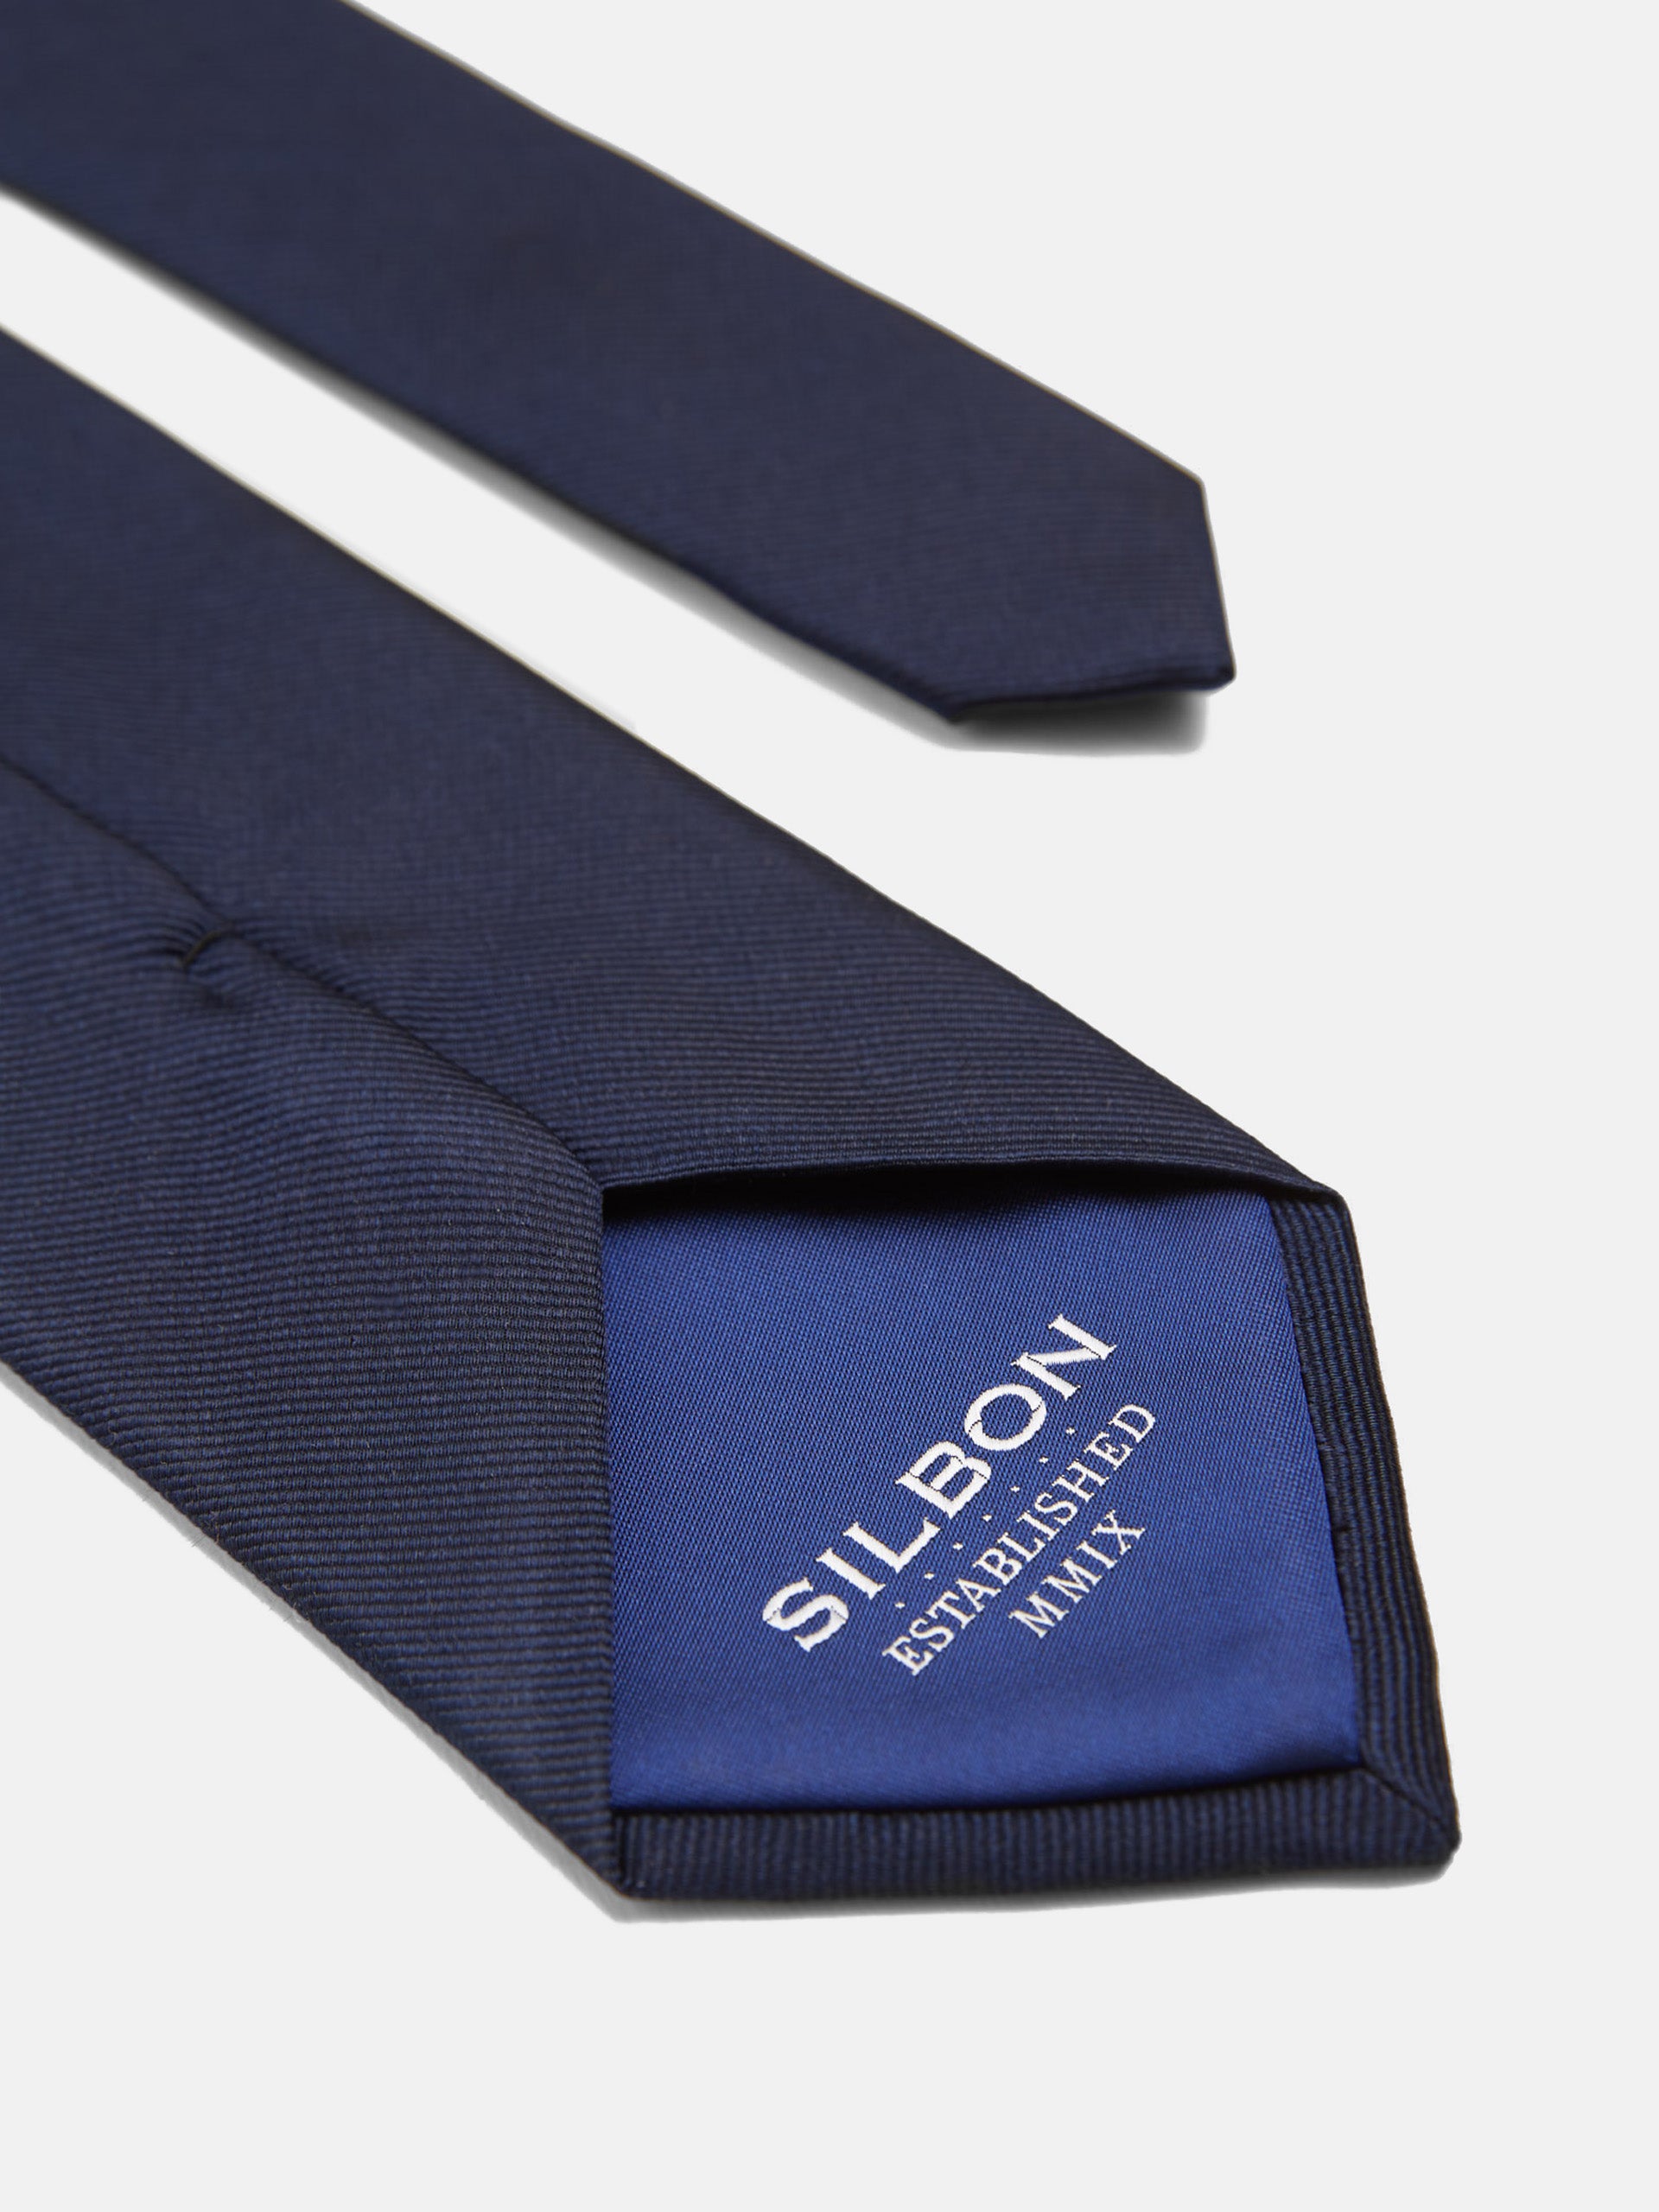 Cravate maxi logo bleu marine